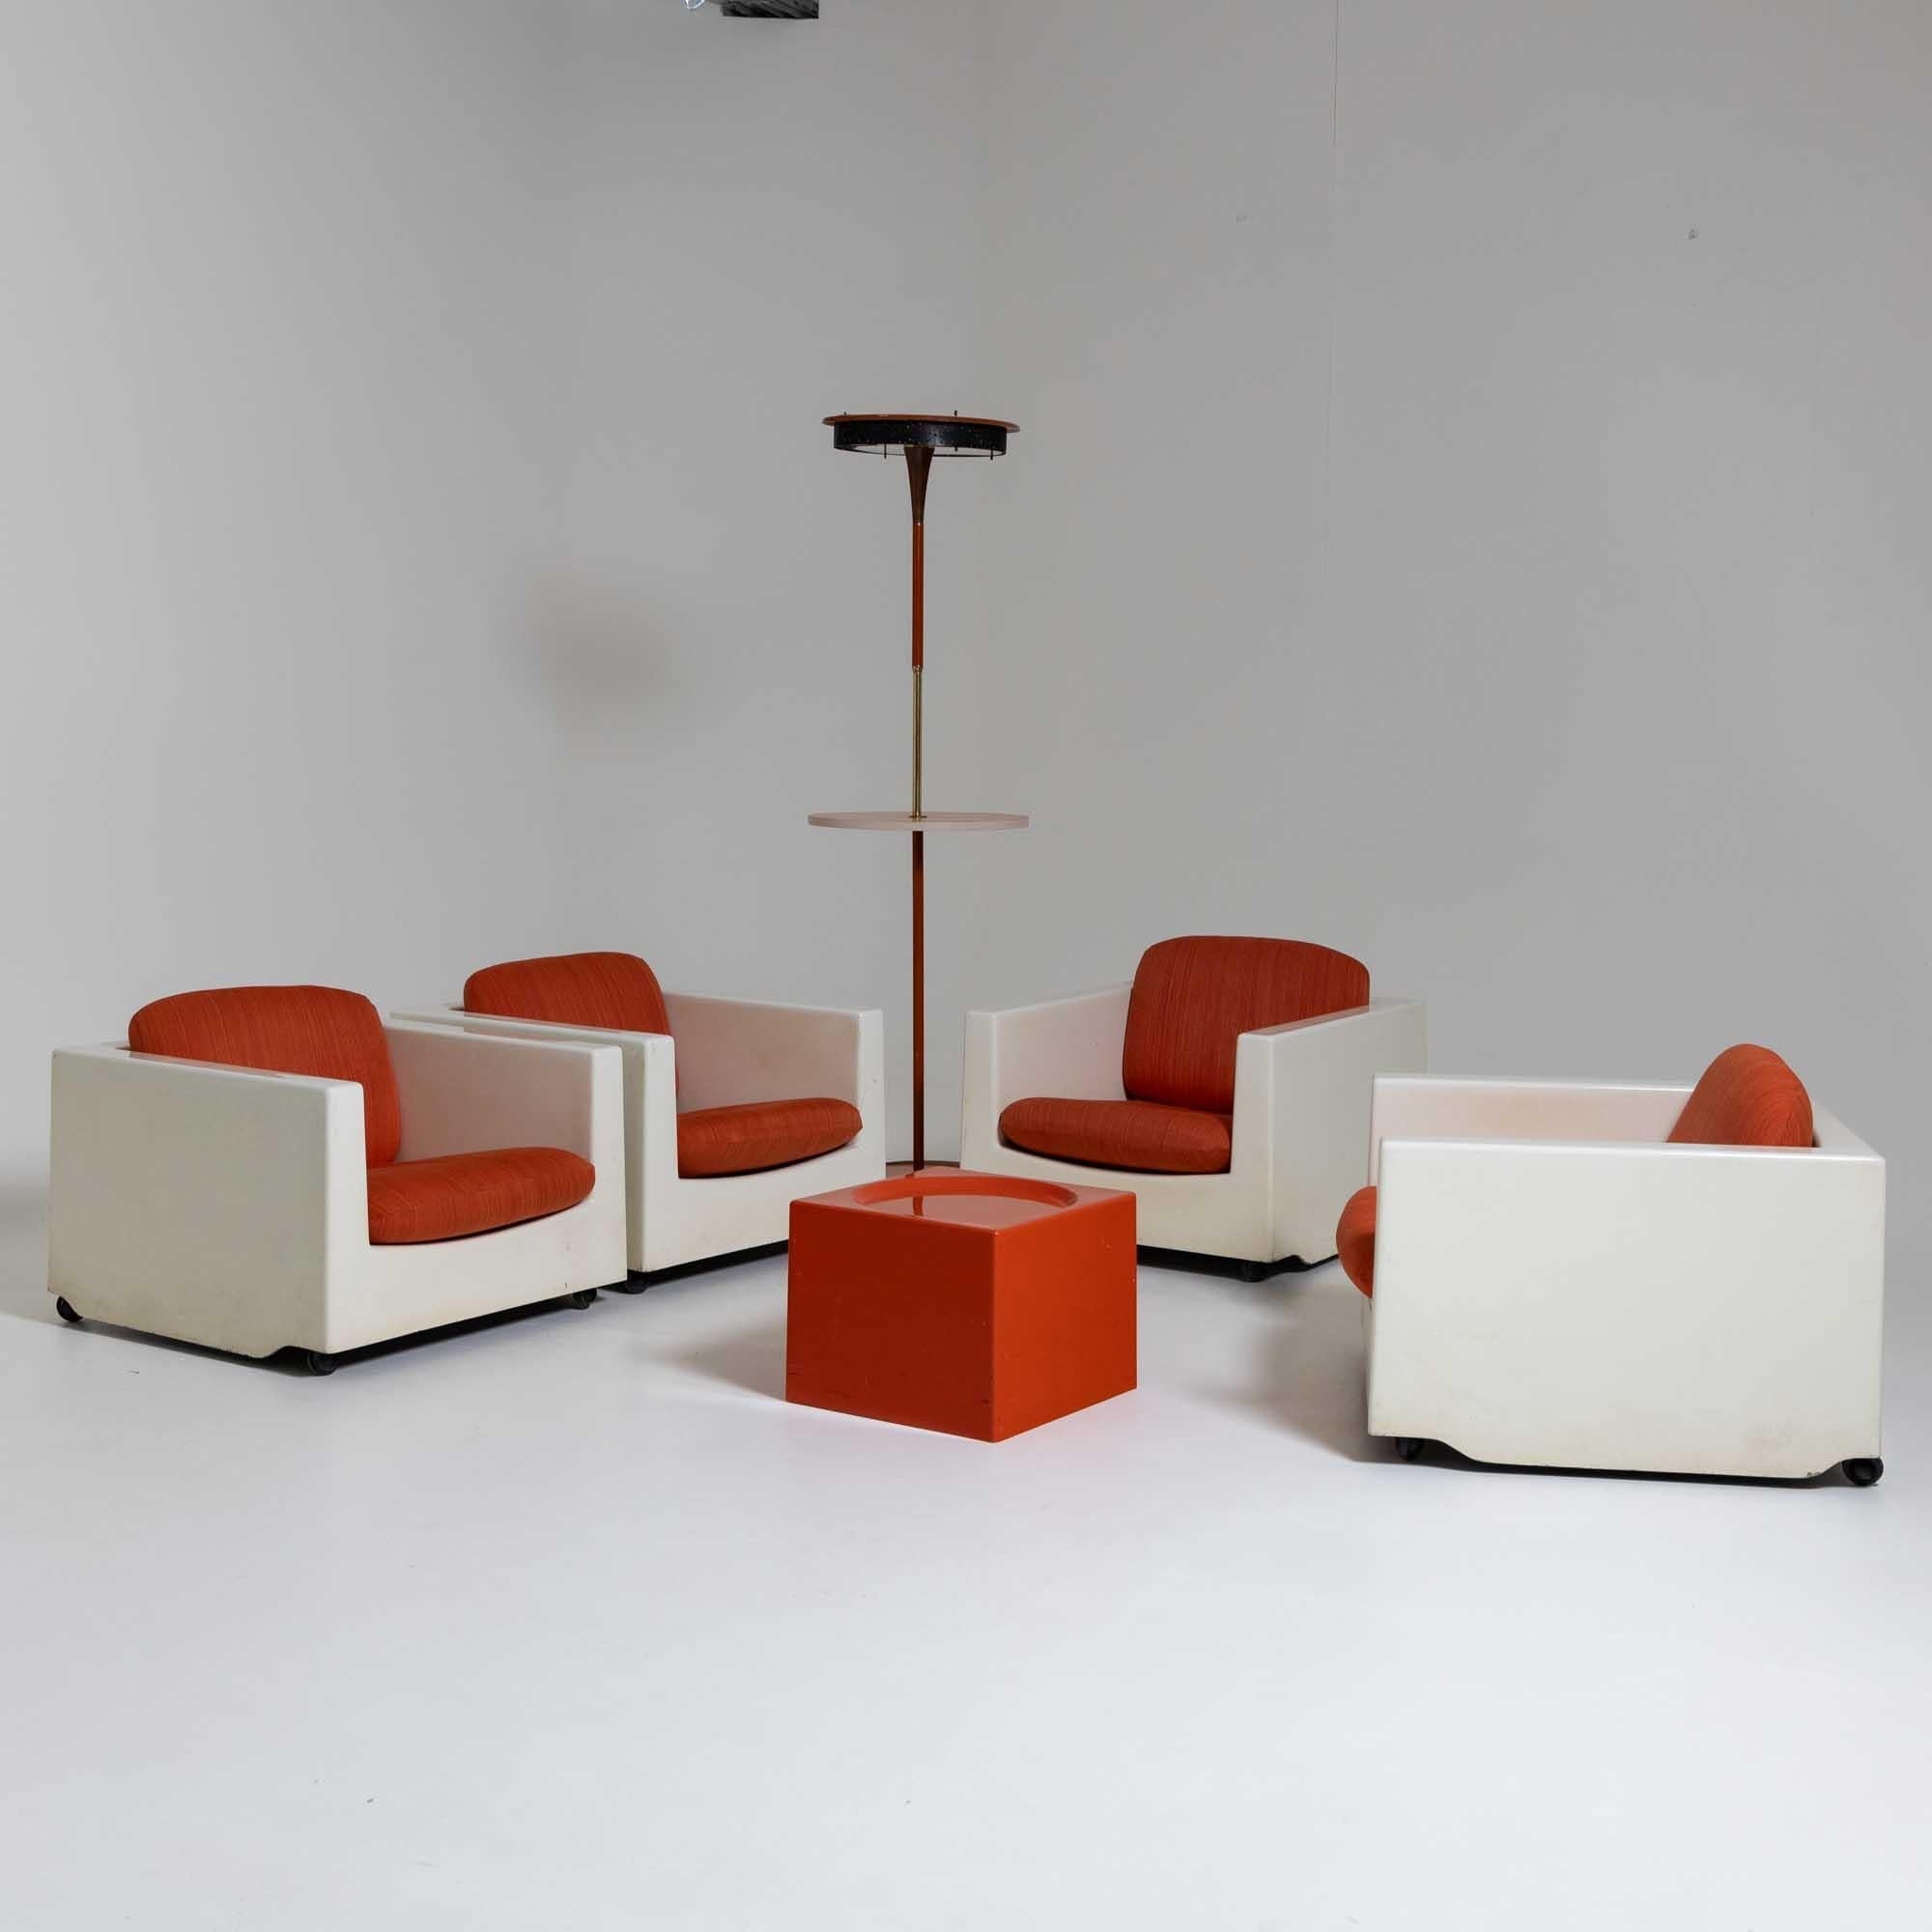 Groupe de sièges du milieu du siècle composé de quatre fauteuils et d'une table : 33 x 41 x 41 cm. Les fauteuils sont en plastique blanc et sont sur roulettes. Les fauteuils cubiques sont équipés de deux coussins recouverts d'orange. La table basse